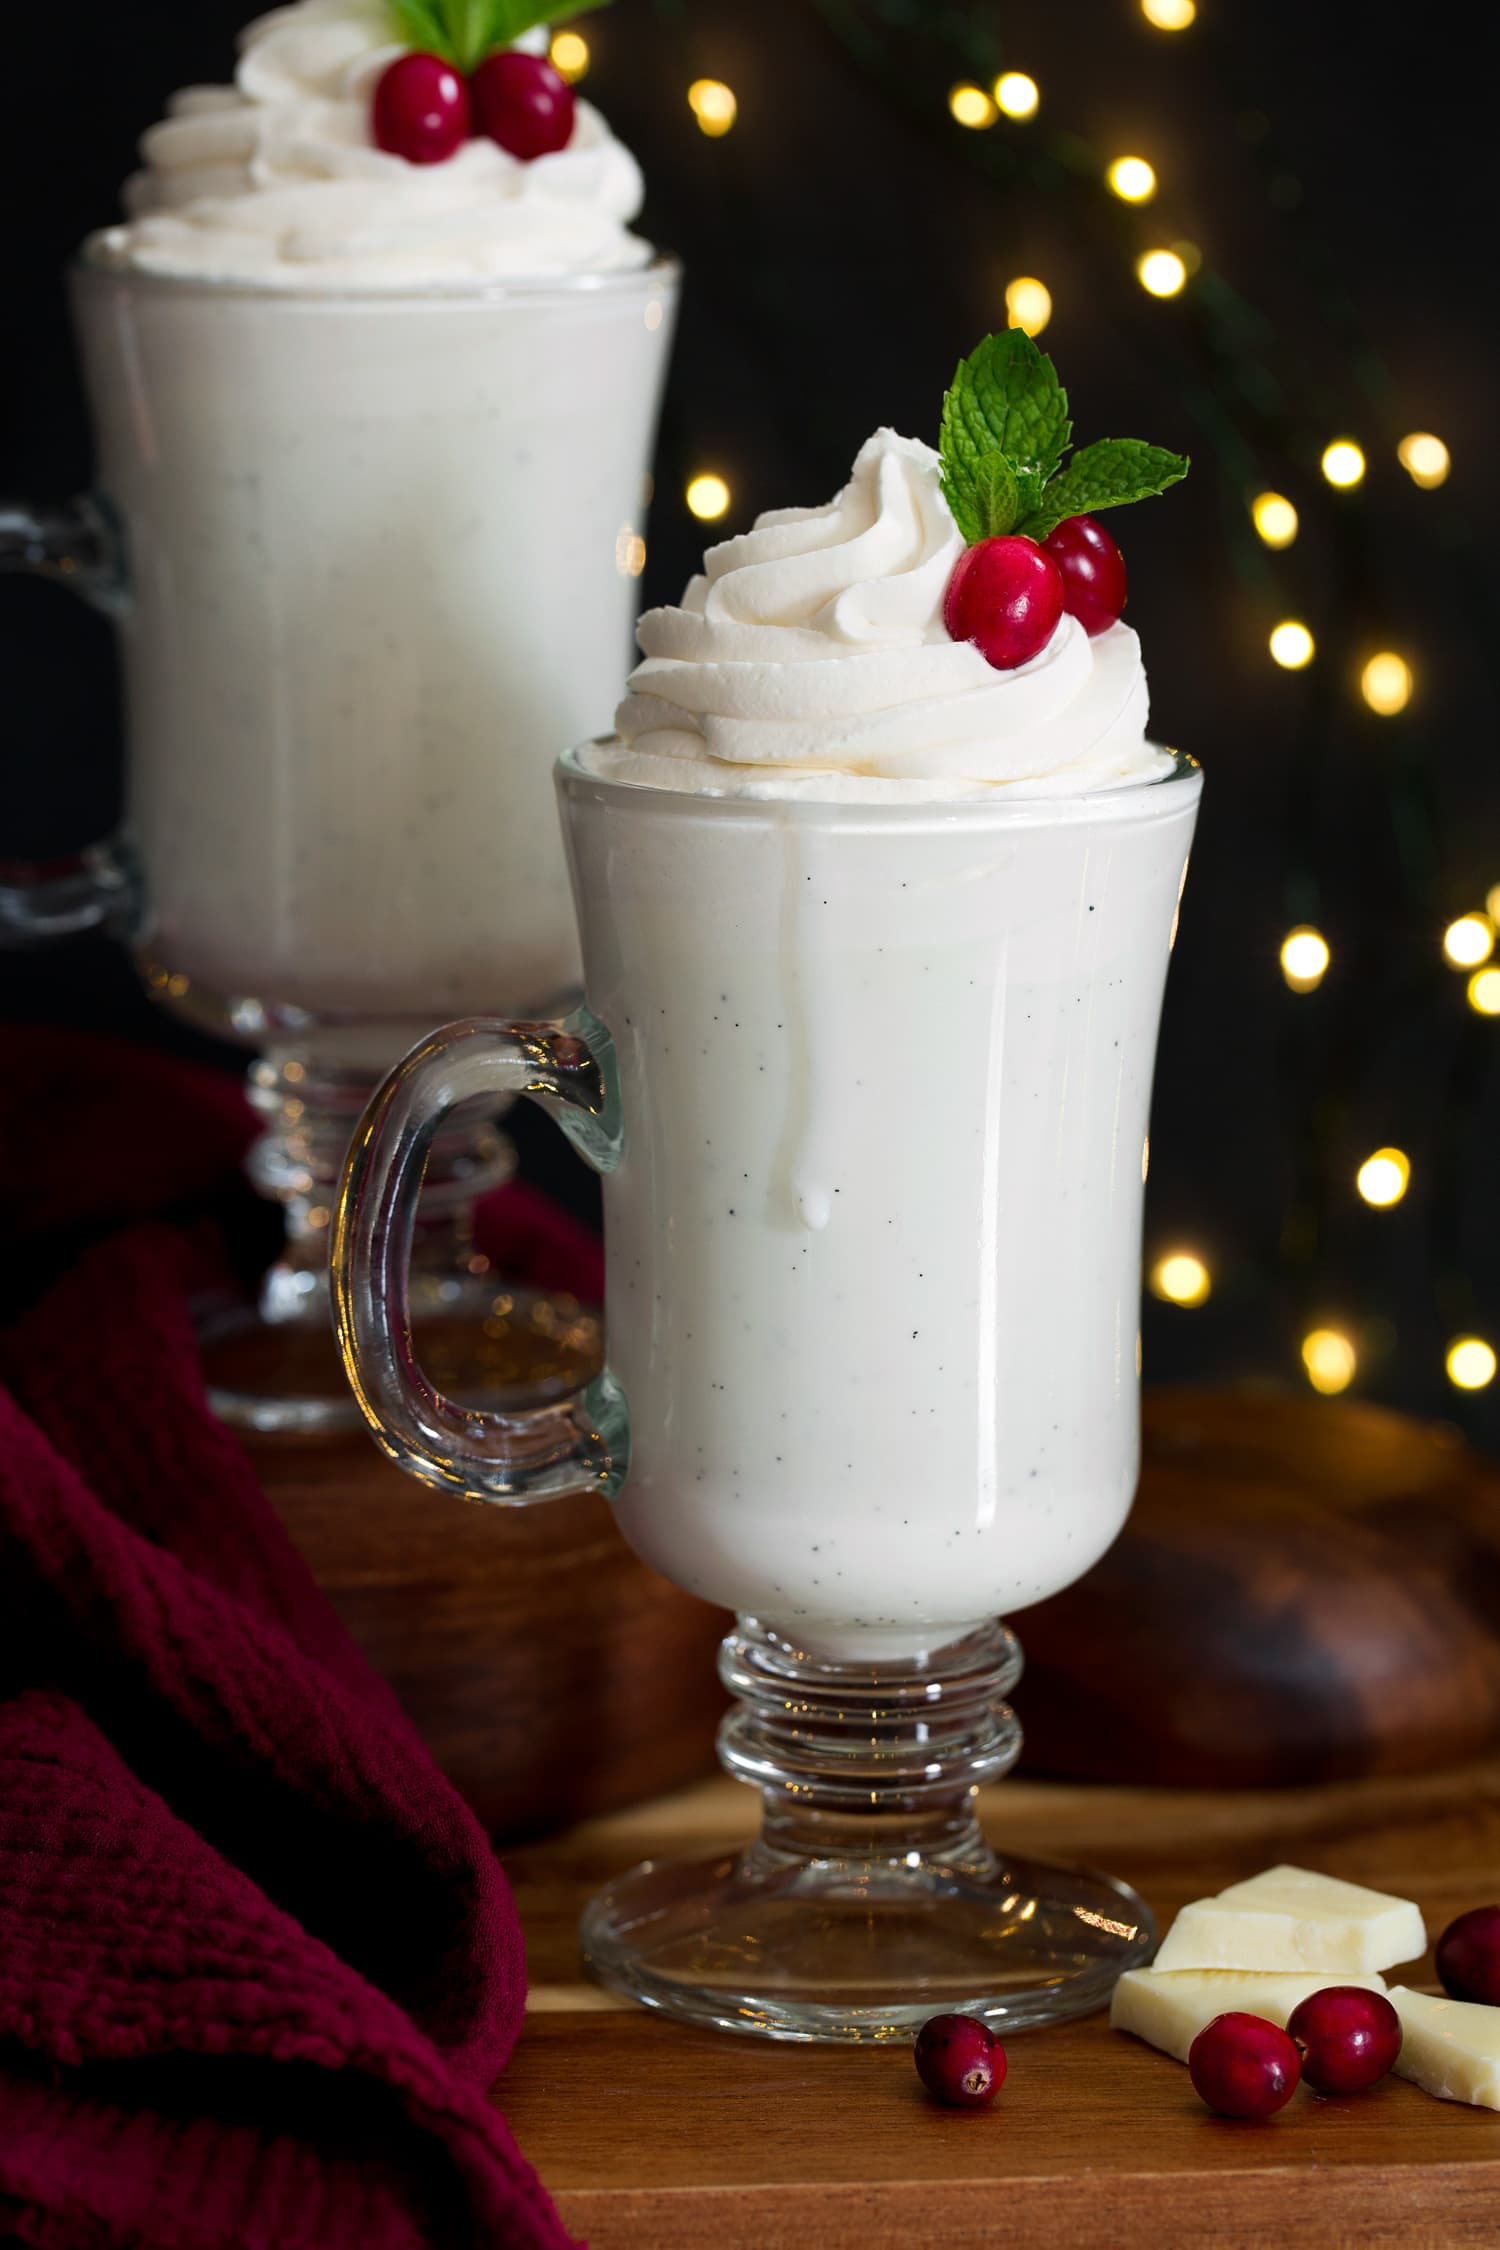 Foto ravvicinata di un bicchiere alto di cioccolata calda bianca condita con panna montata, mirtilli rossi e menta.